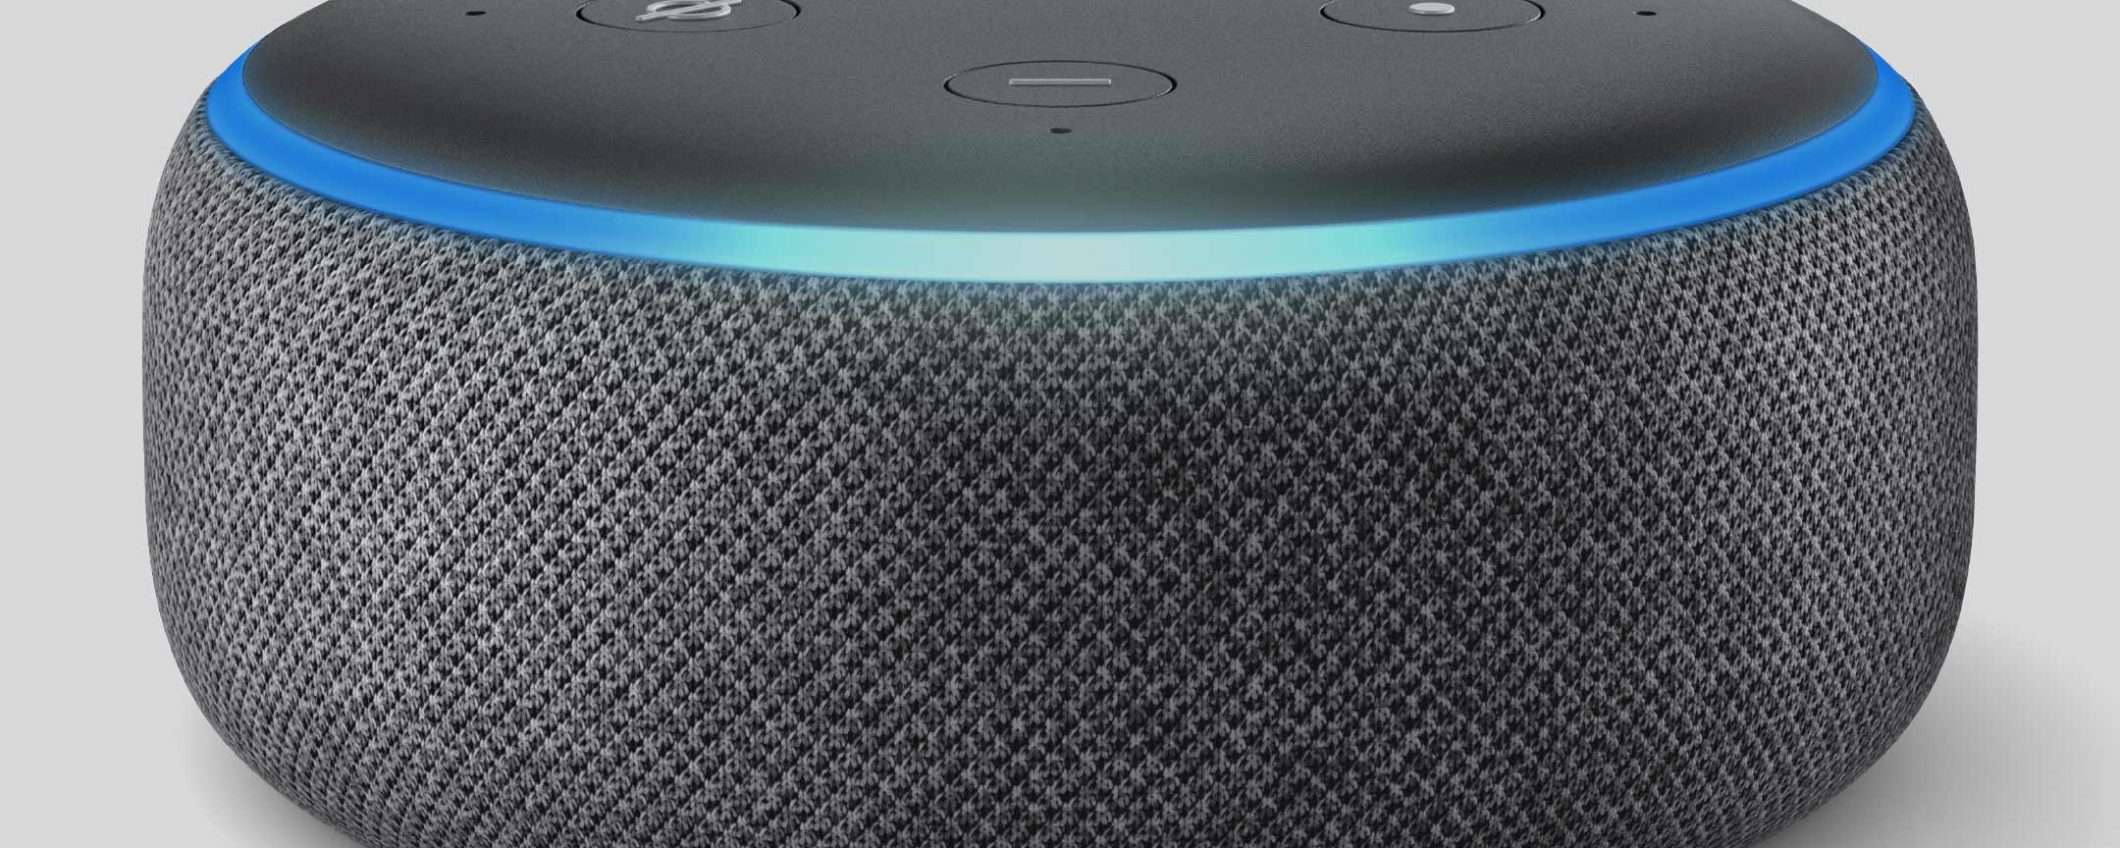 Benvenuta Alexa: Amazon Echo Dot 3a Generazione scontato del 50%